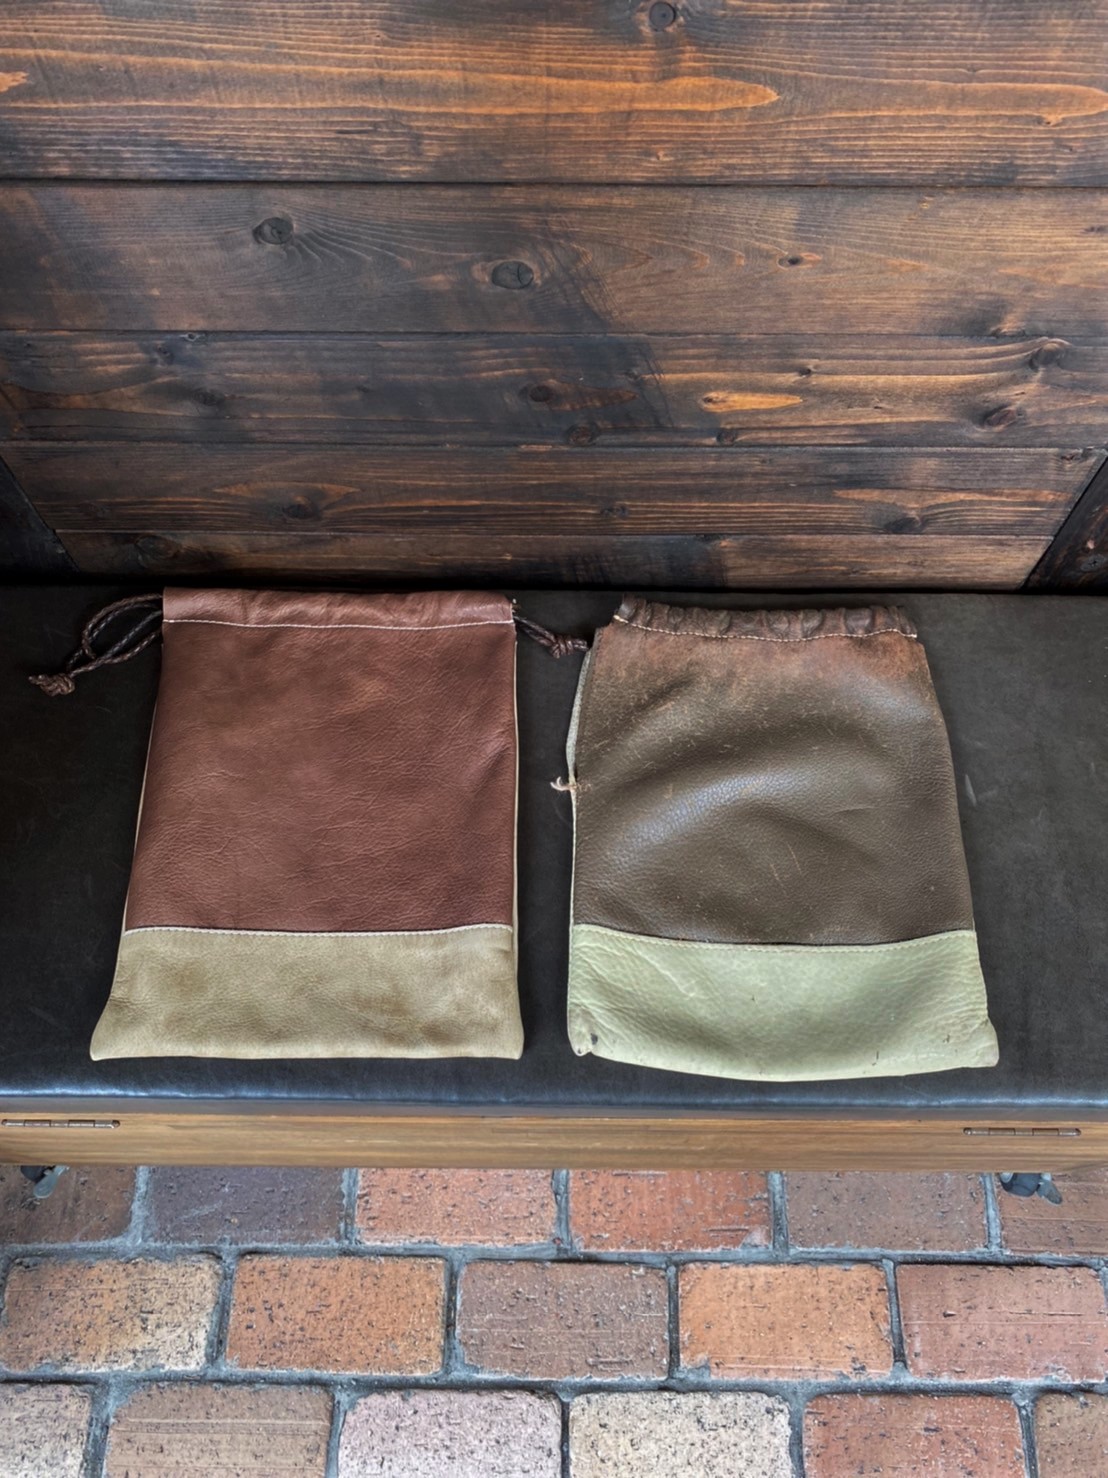 神戸元町のオーダーメード店創作鞄槌井の職人が工房で手作りした革の巾着袋